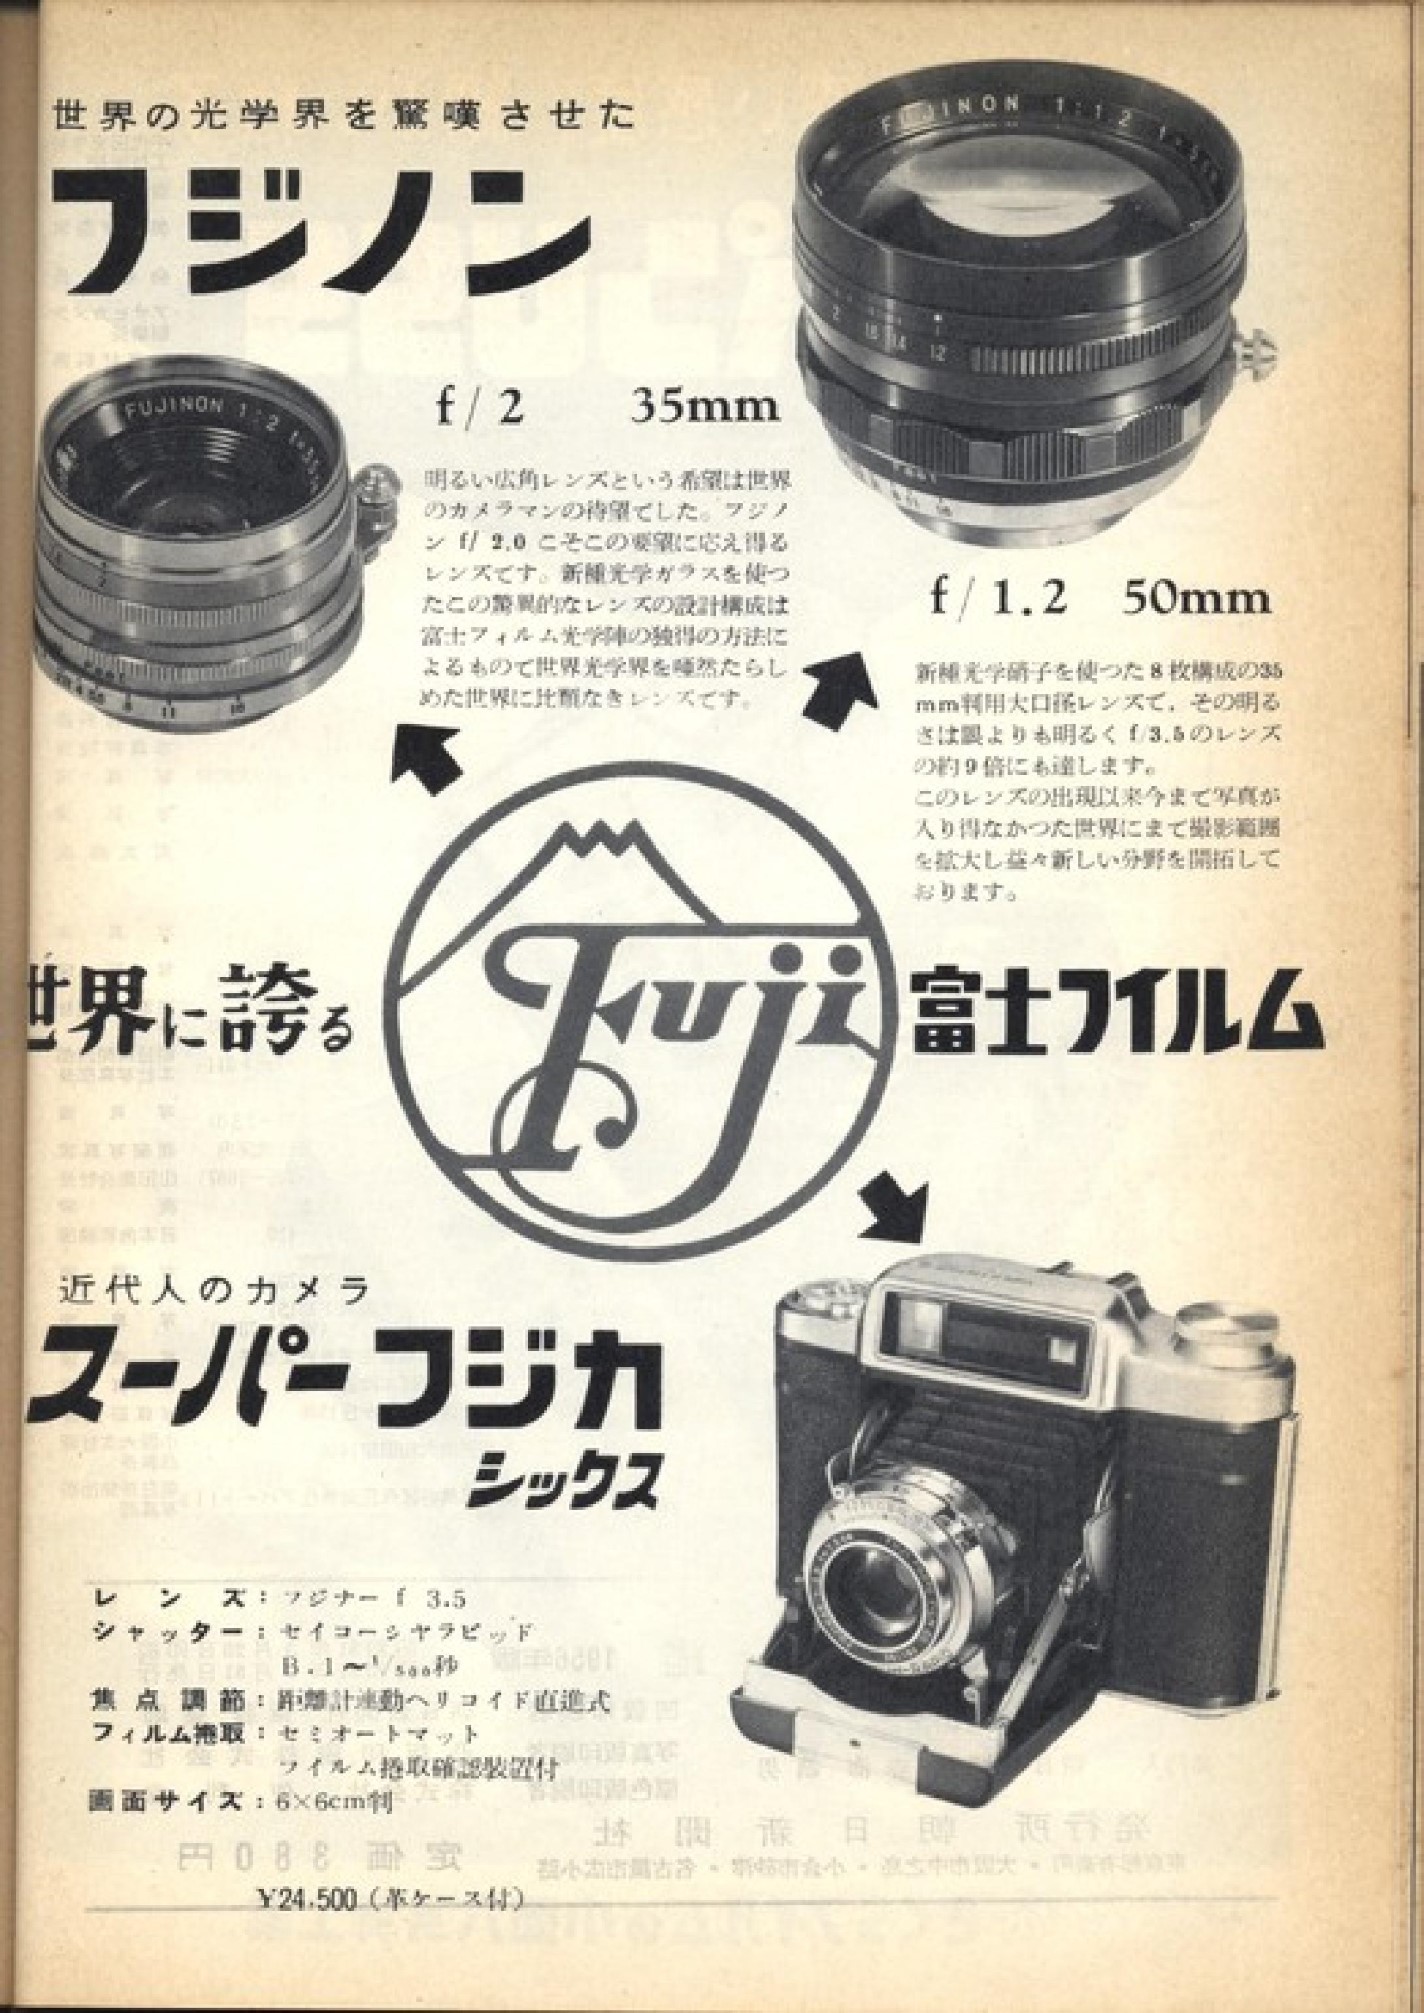 Super Fujica-6 (1955) - mike eckman dot com